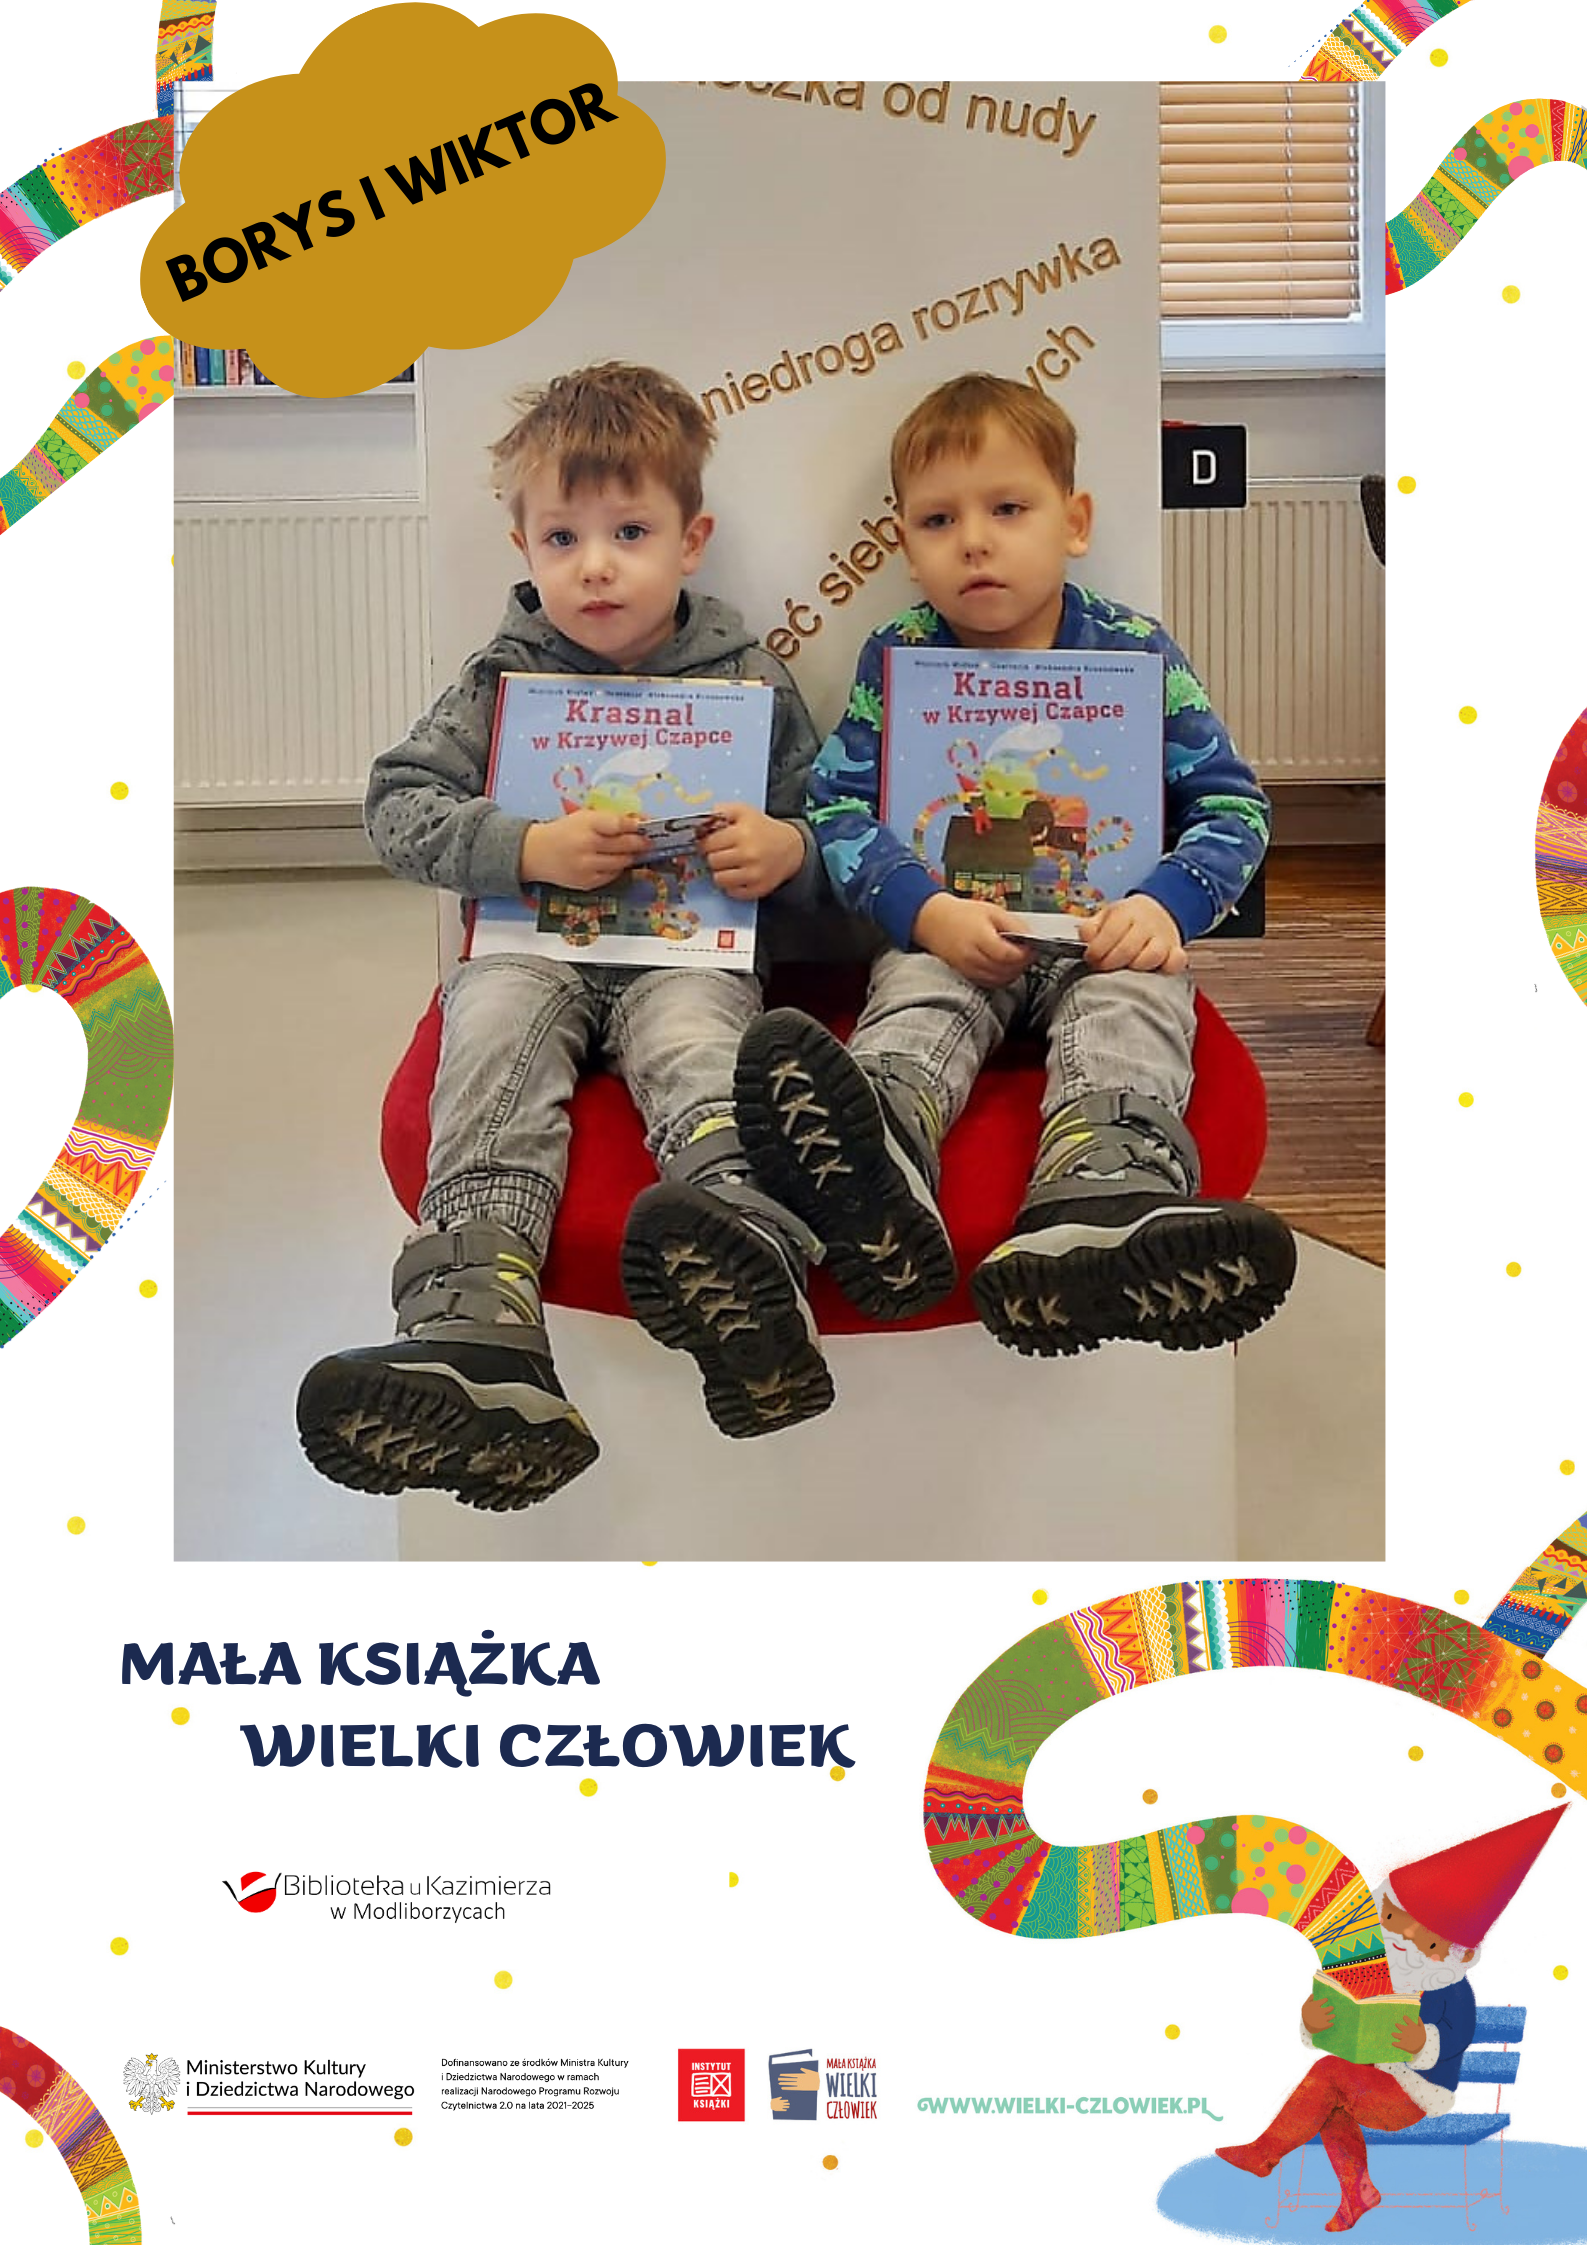 Przedstawiamy wam Borysa i Wiktora, Super Braci, którzy zapisali się do naszej biblioteki i odebrali Wyprawkę Czytelniczą, a w niej książkę "Pierwsze czytanki dla..." oraz Kartę Małego Czytelnika do zbierania naklejek. Serdeczne gratulacje!